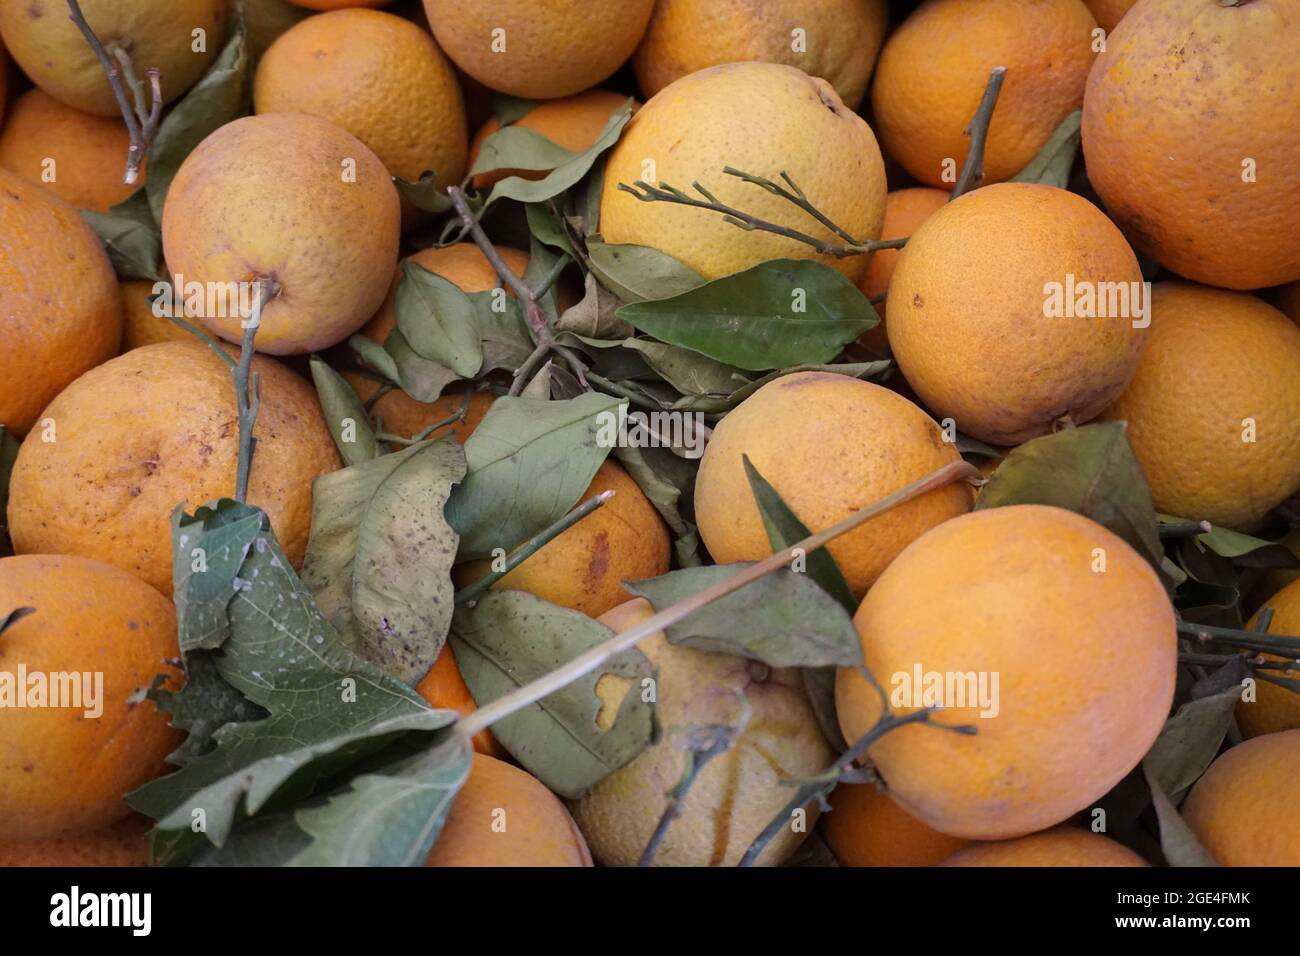 Valencia Orange venant du Maroc, fruits naturels, sur le marché, fruits orange sains, prêts à consommer Banque D'Images